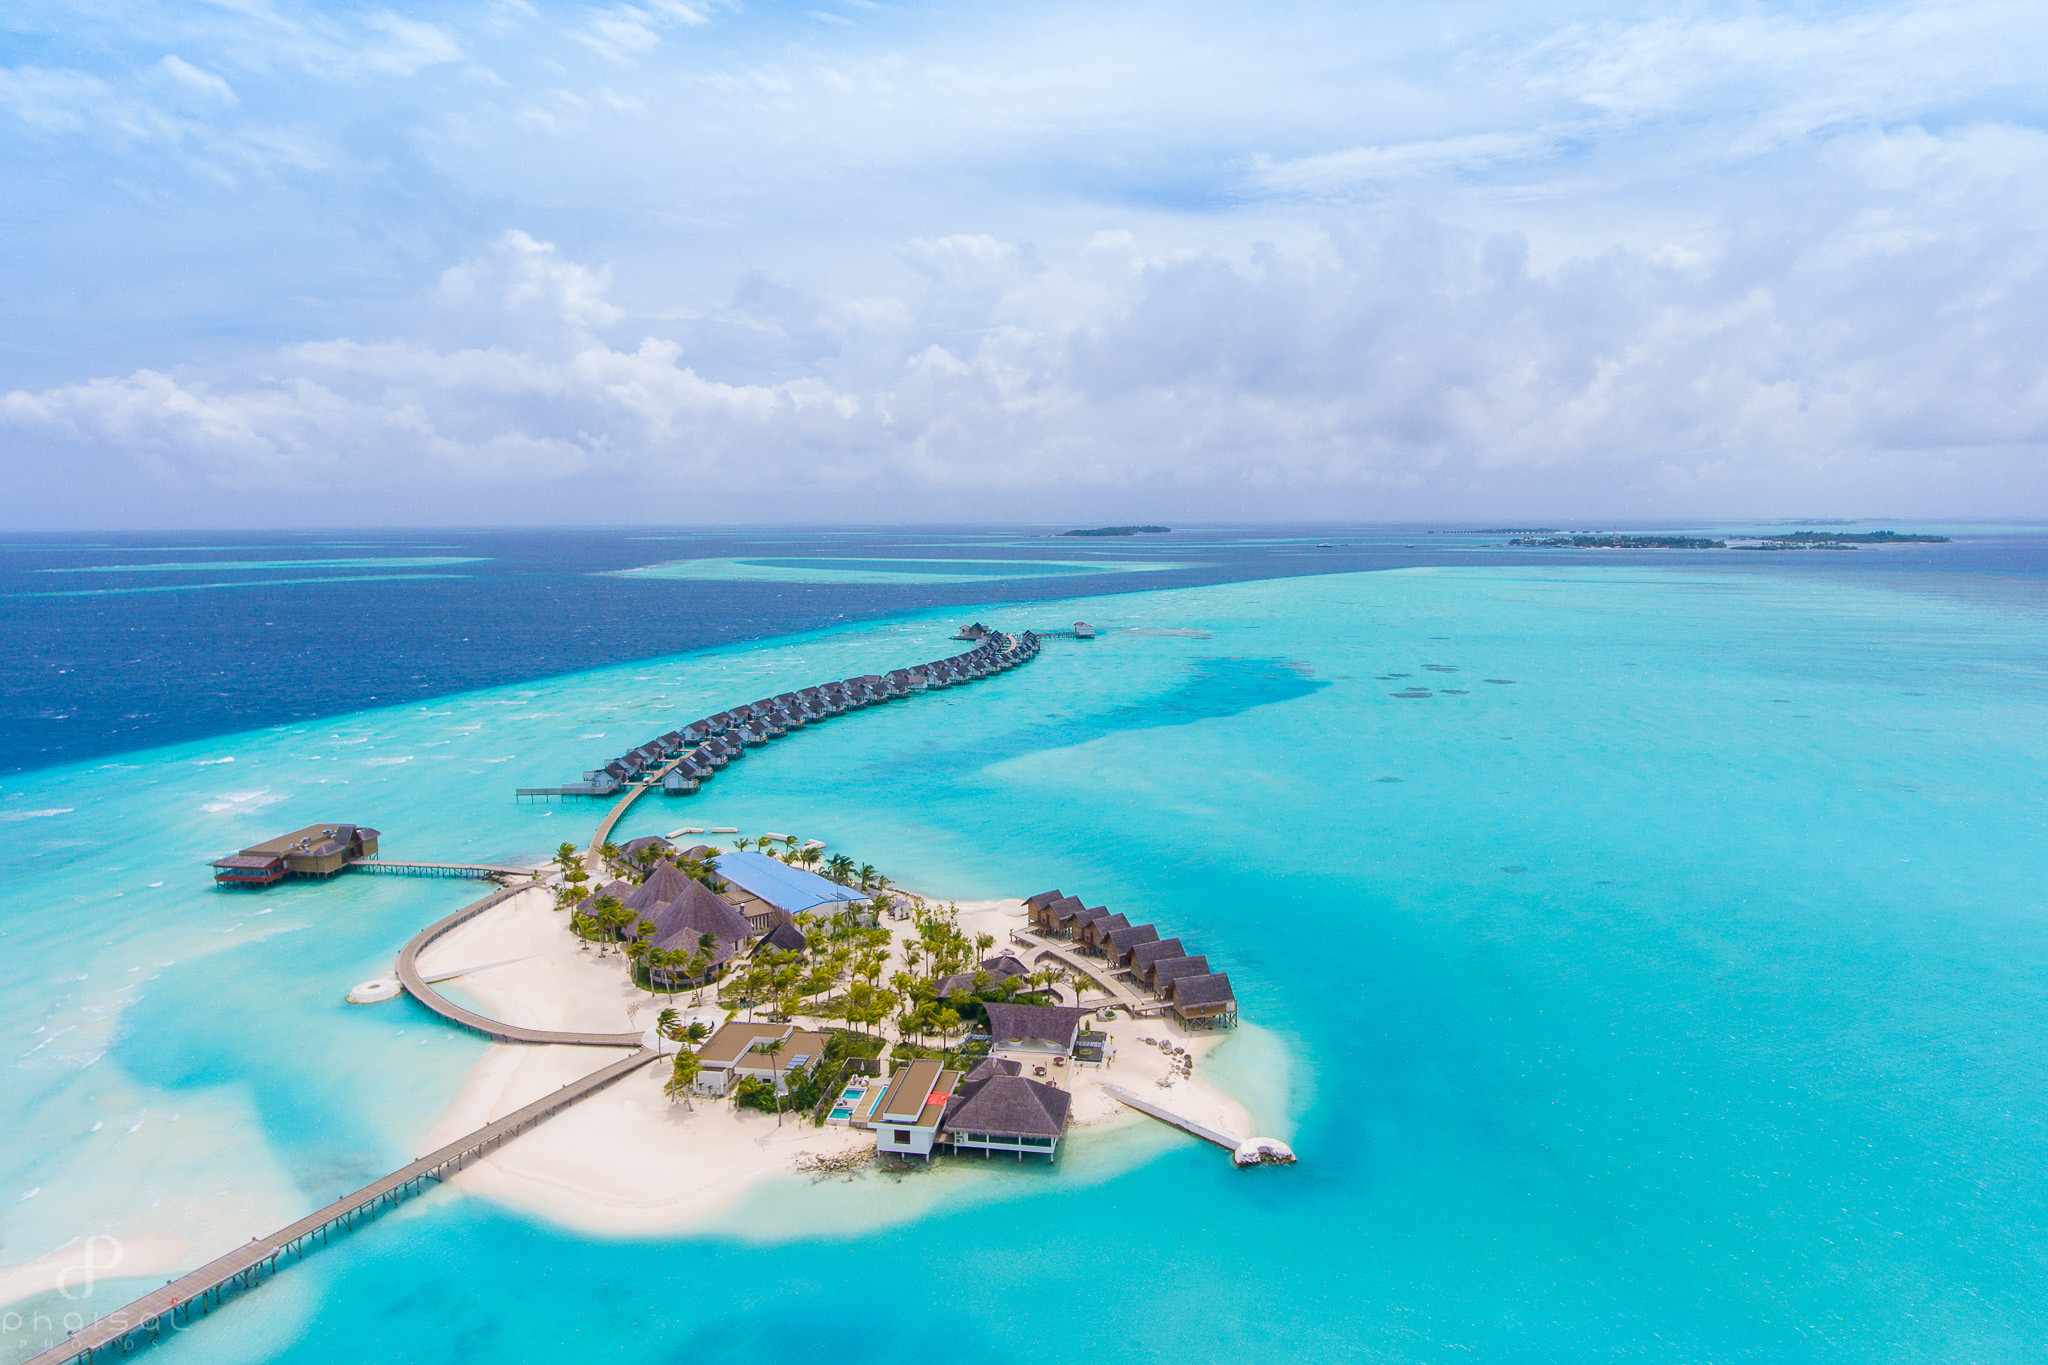 10 Things You Shouldn’t Miss at Baglioni Resort Maldives